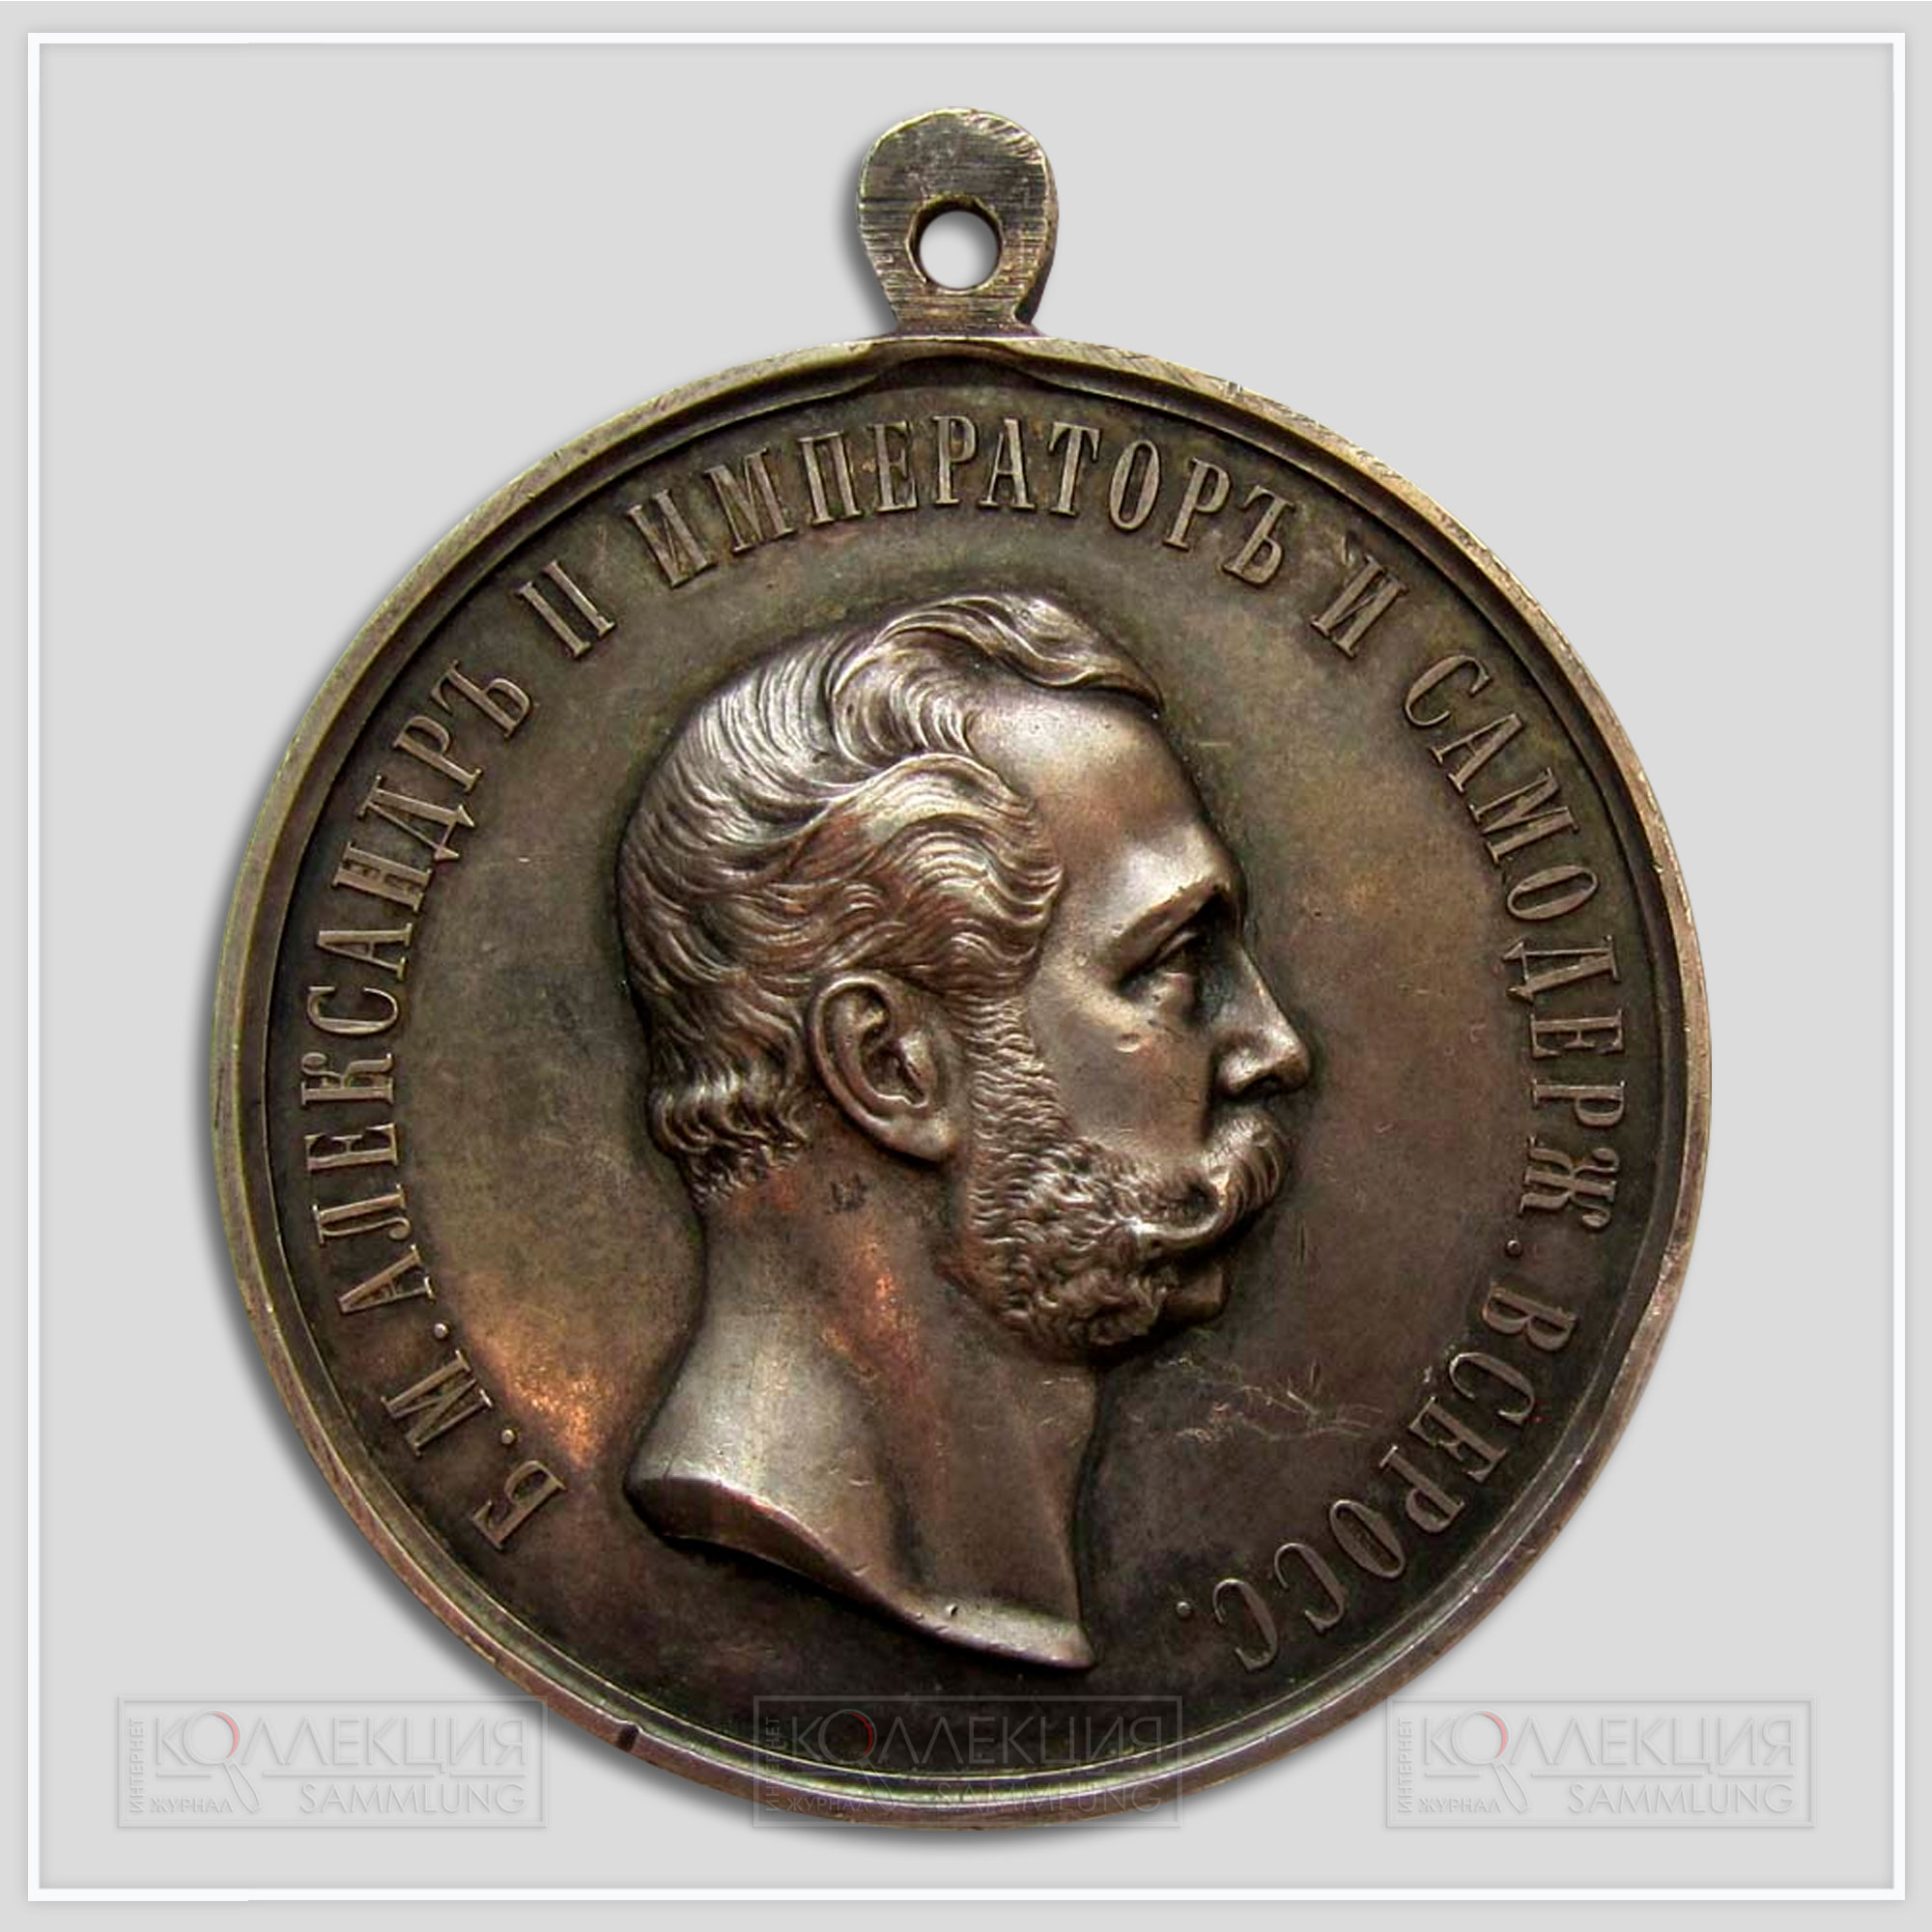 Медаль «За усердие» Александр II (шейная) Диаметр 50,7 мм Вес 55,4 г На реверсе надпись "В. Кузин" (Медаль любезно предоставил Бабаев Виктор г. Кемерово)